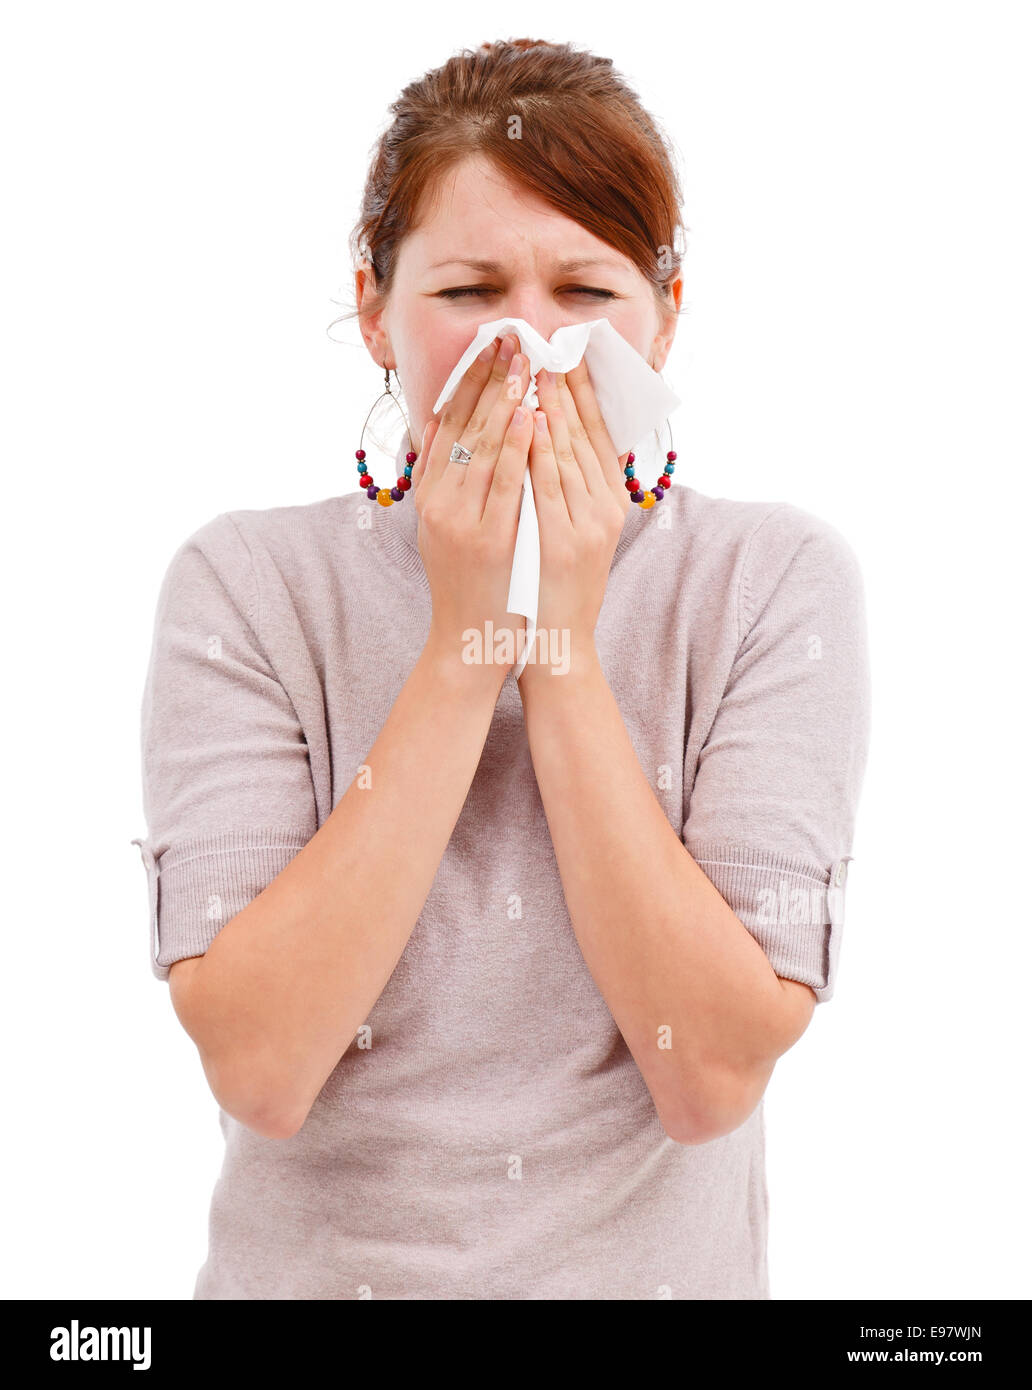 Jeune femme allergique éternuer ou s'être mouché le nez Banque D'Images